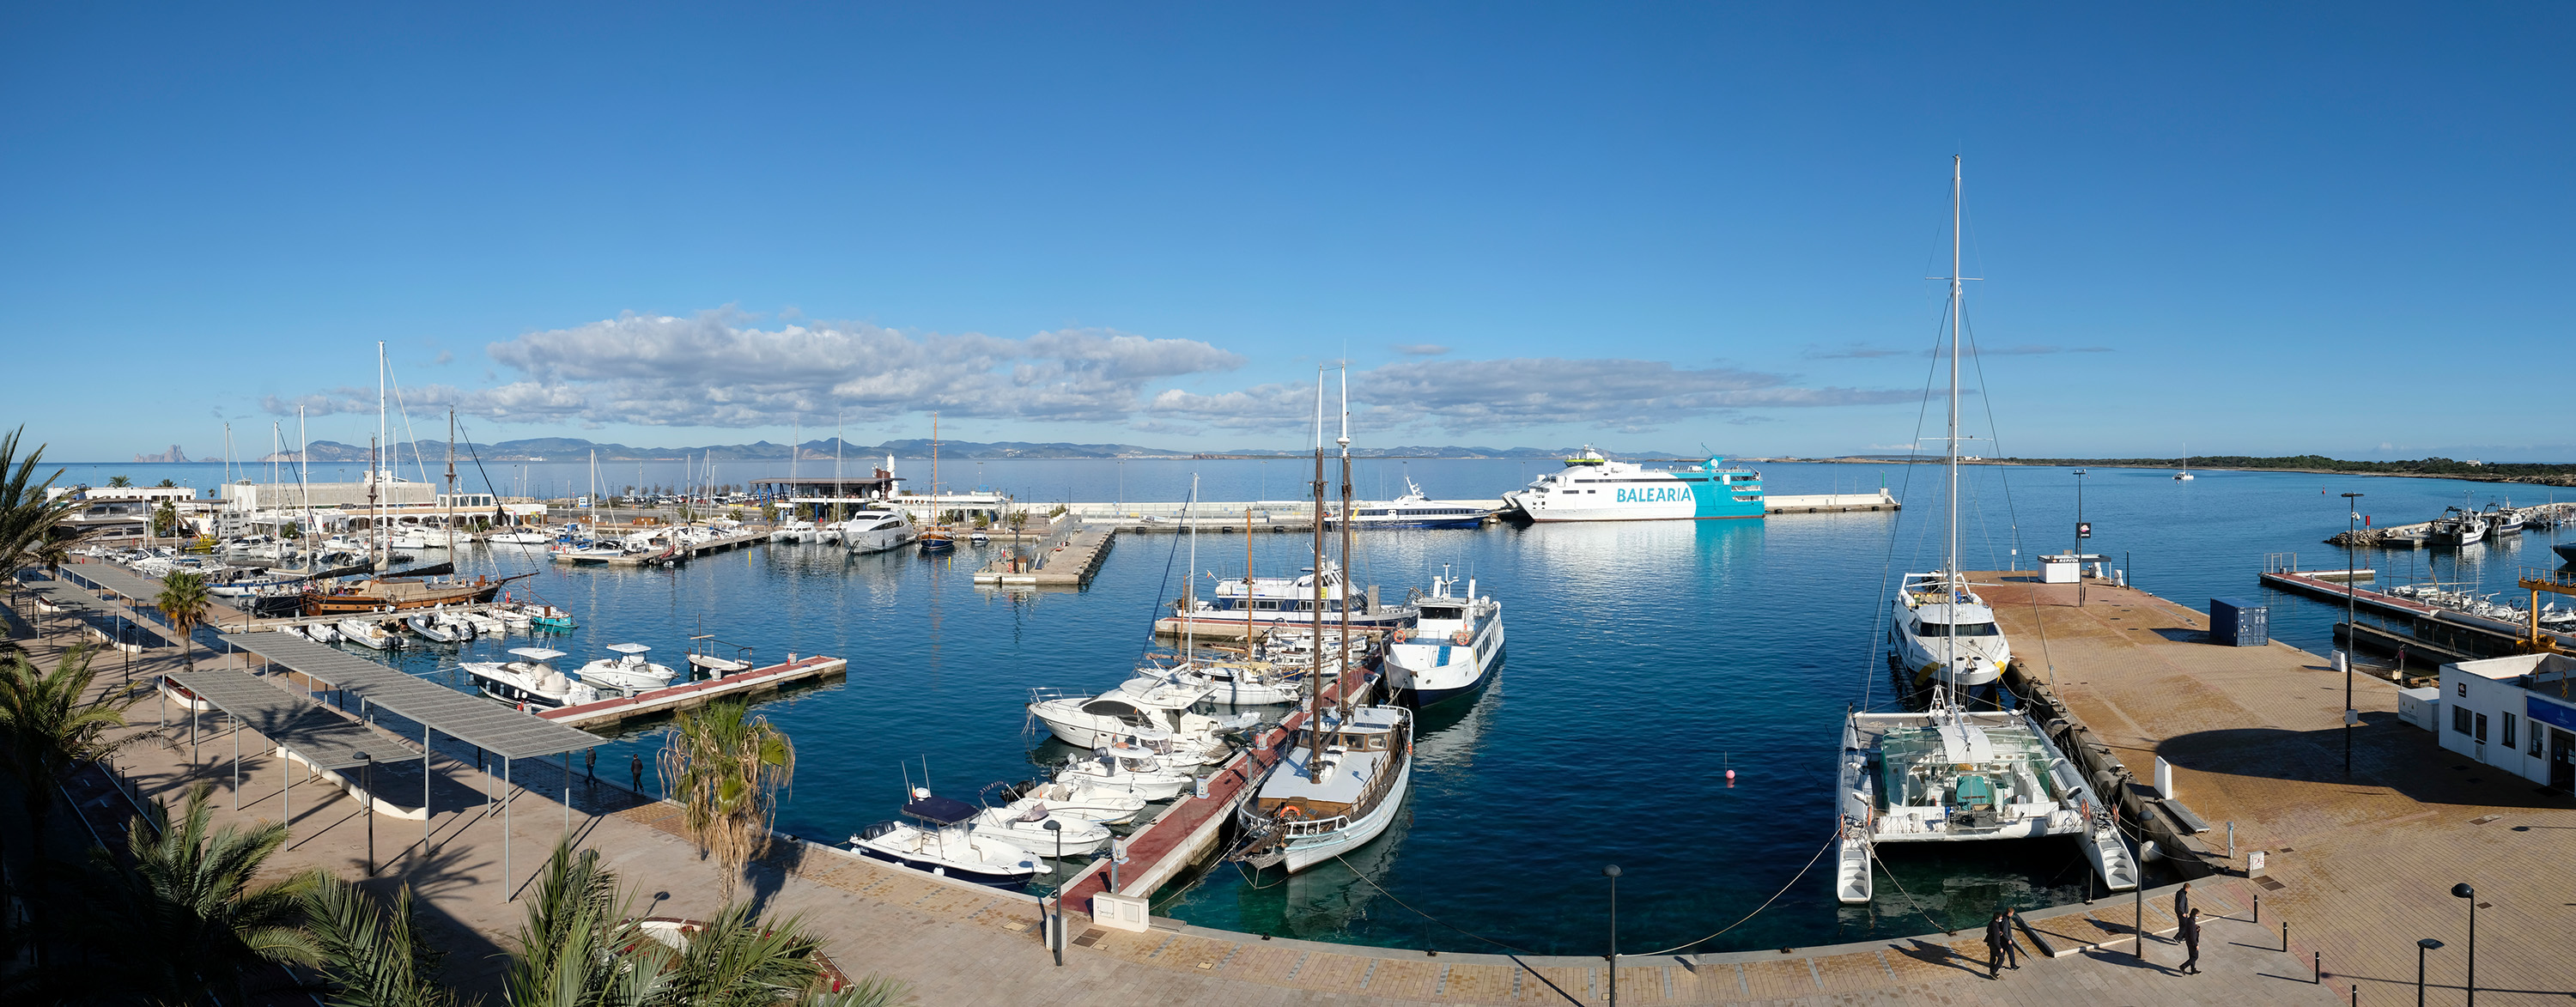 Port Med Formentera gestionará los amarres y locales de la dársena de Poniente del puerto de la Savina 